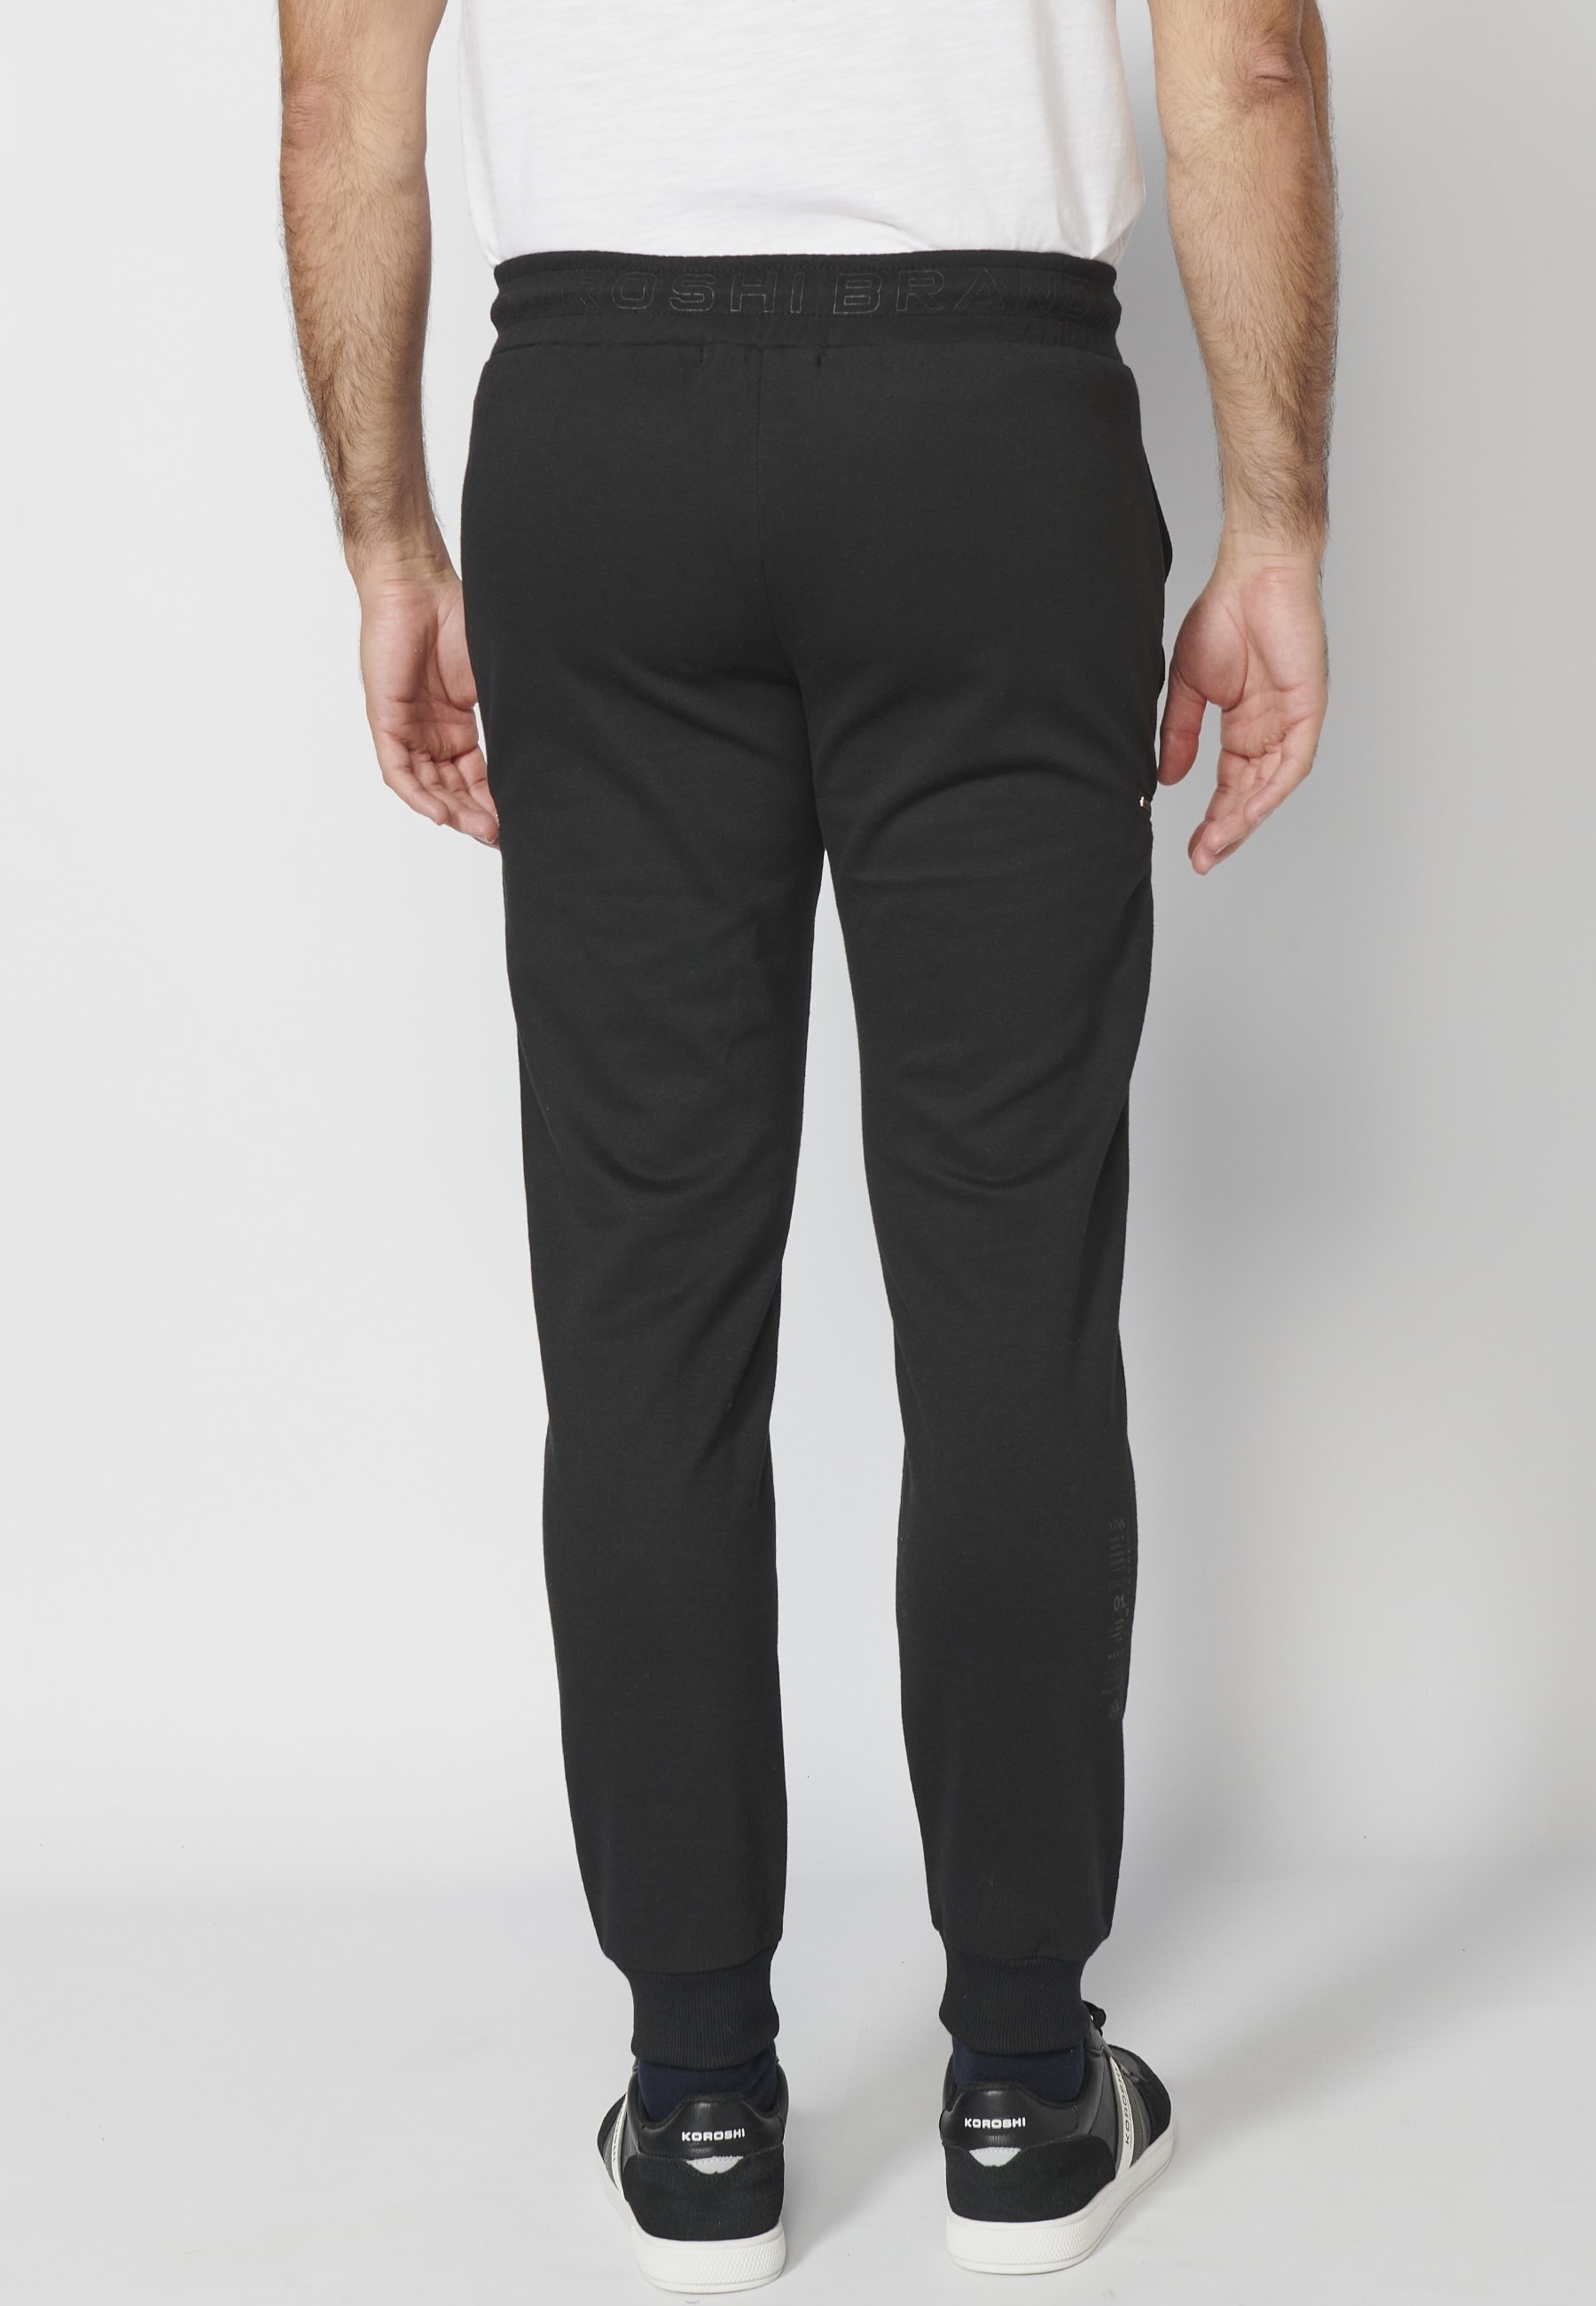 Pantalon de jogging long avec ceinture élastiquée et cordon de serrage avec découpes aux genoux de couleur Noir pour Homme